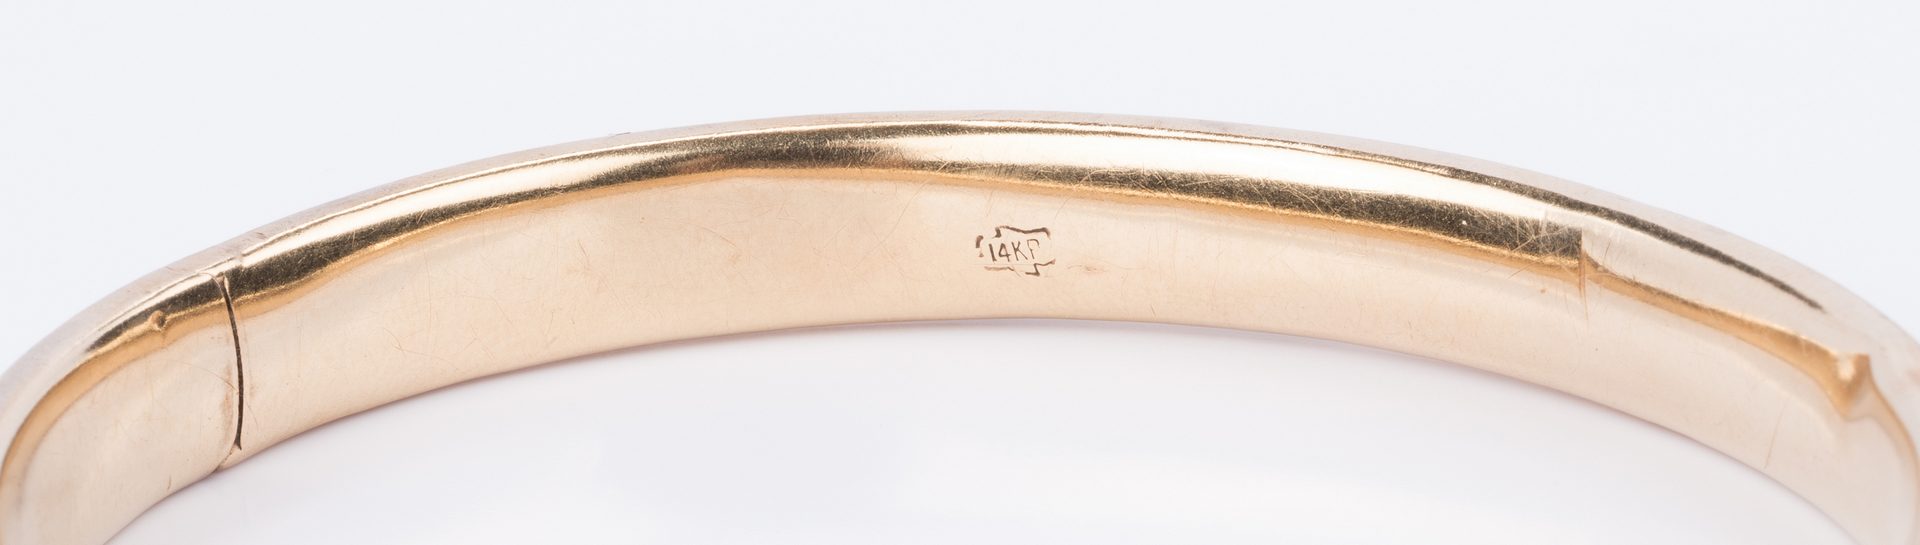 Lot 853: 14K Gold Bangle Bracelet